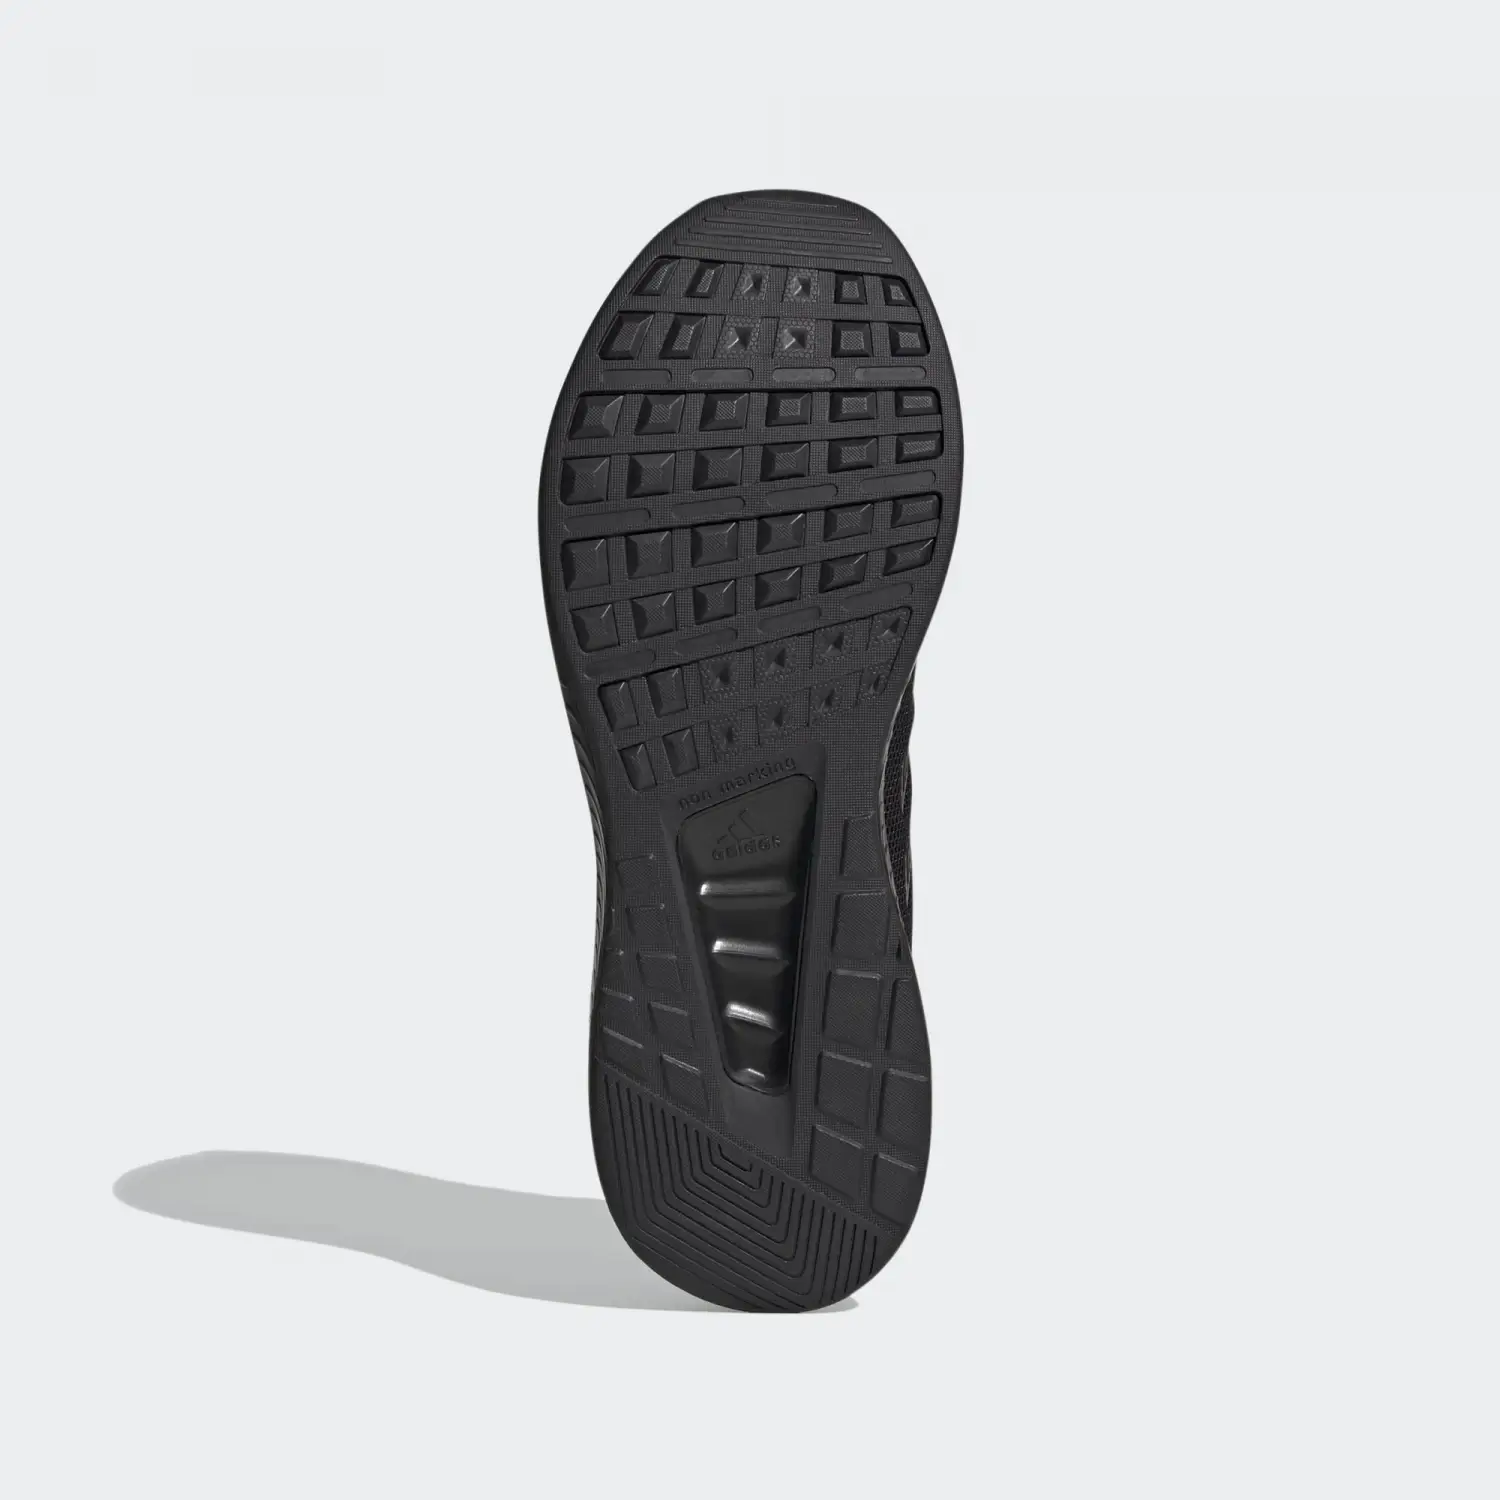 adidas Erkek Runfalcon 2.0 Siyah  Koşu Ayakkabı   -G58096